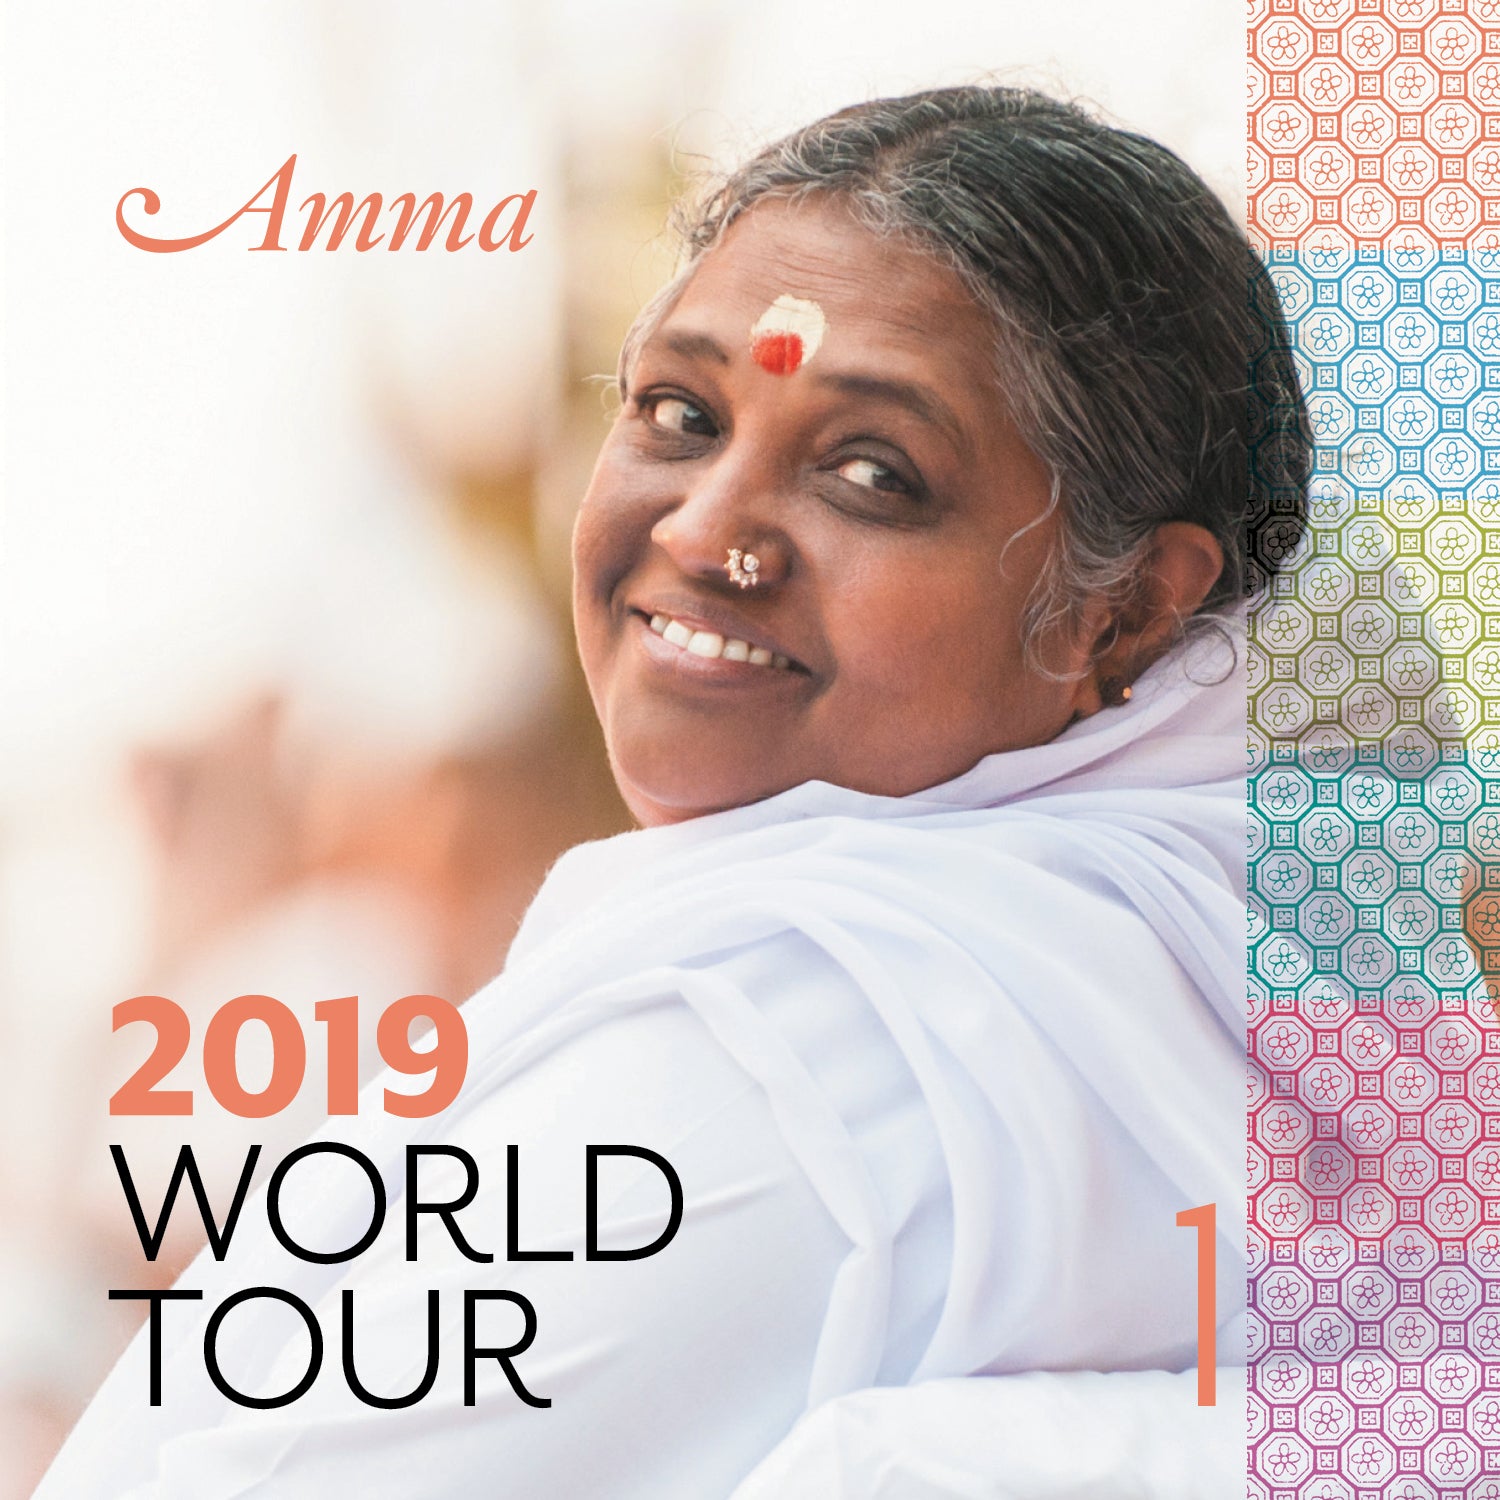 World Tour 2019, Vol. 1 (CD) The Amma Shop